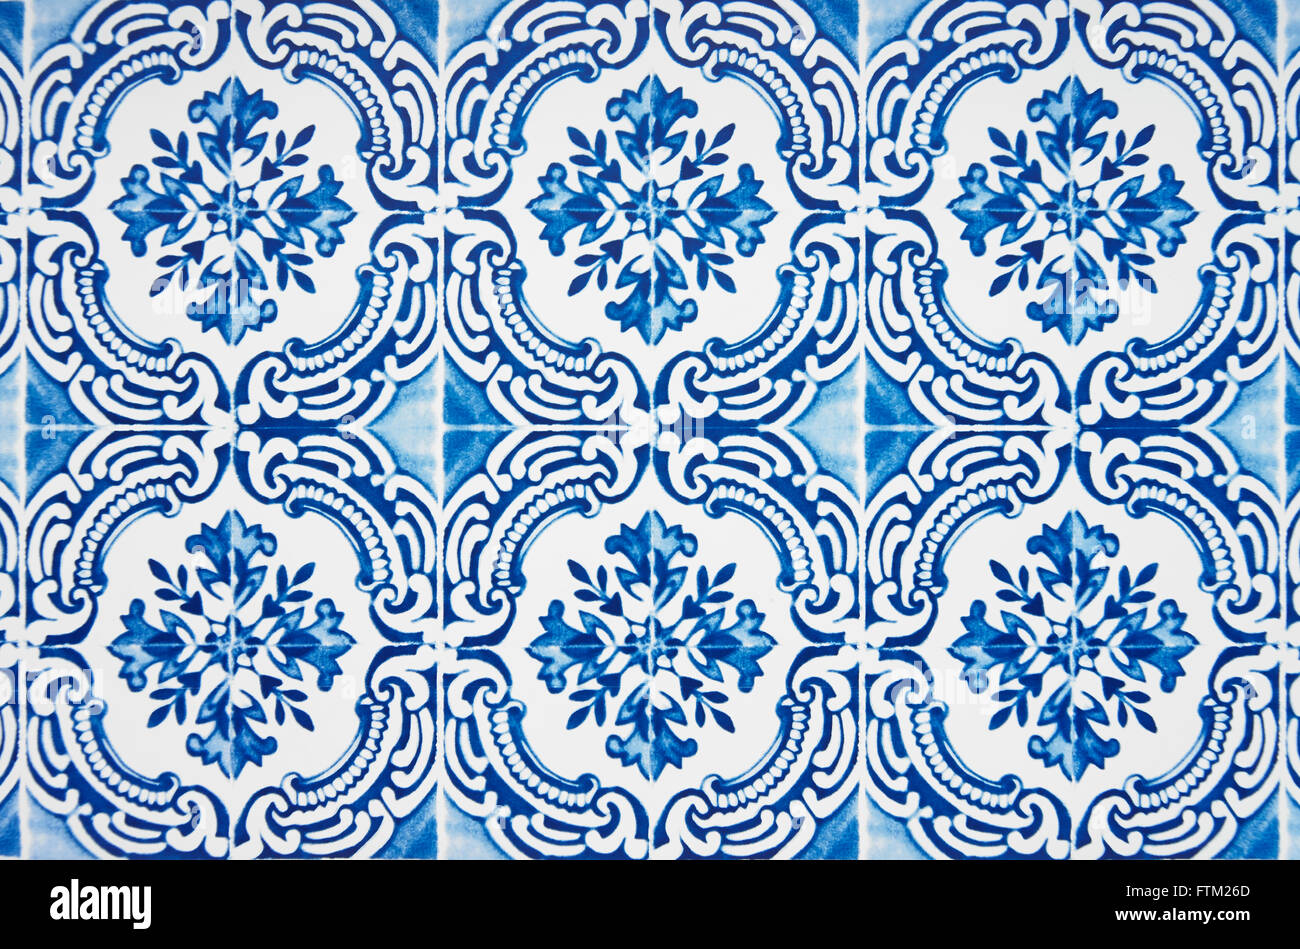 Turkish style tiles Stock Photo